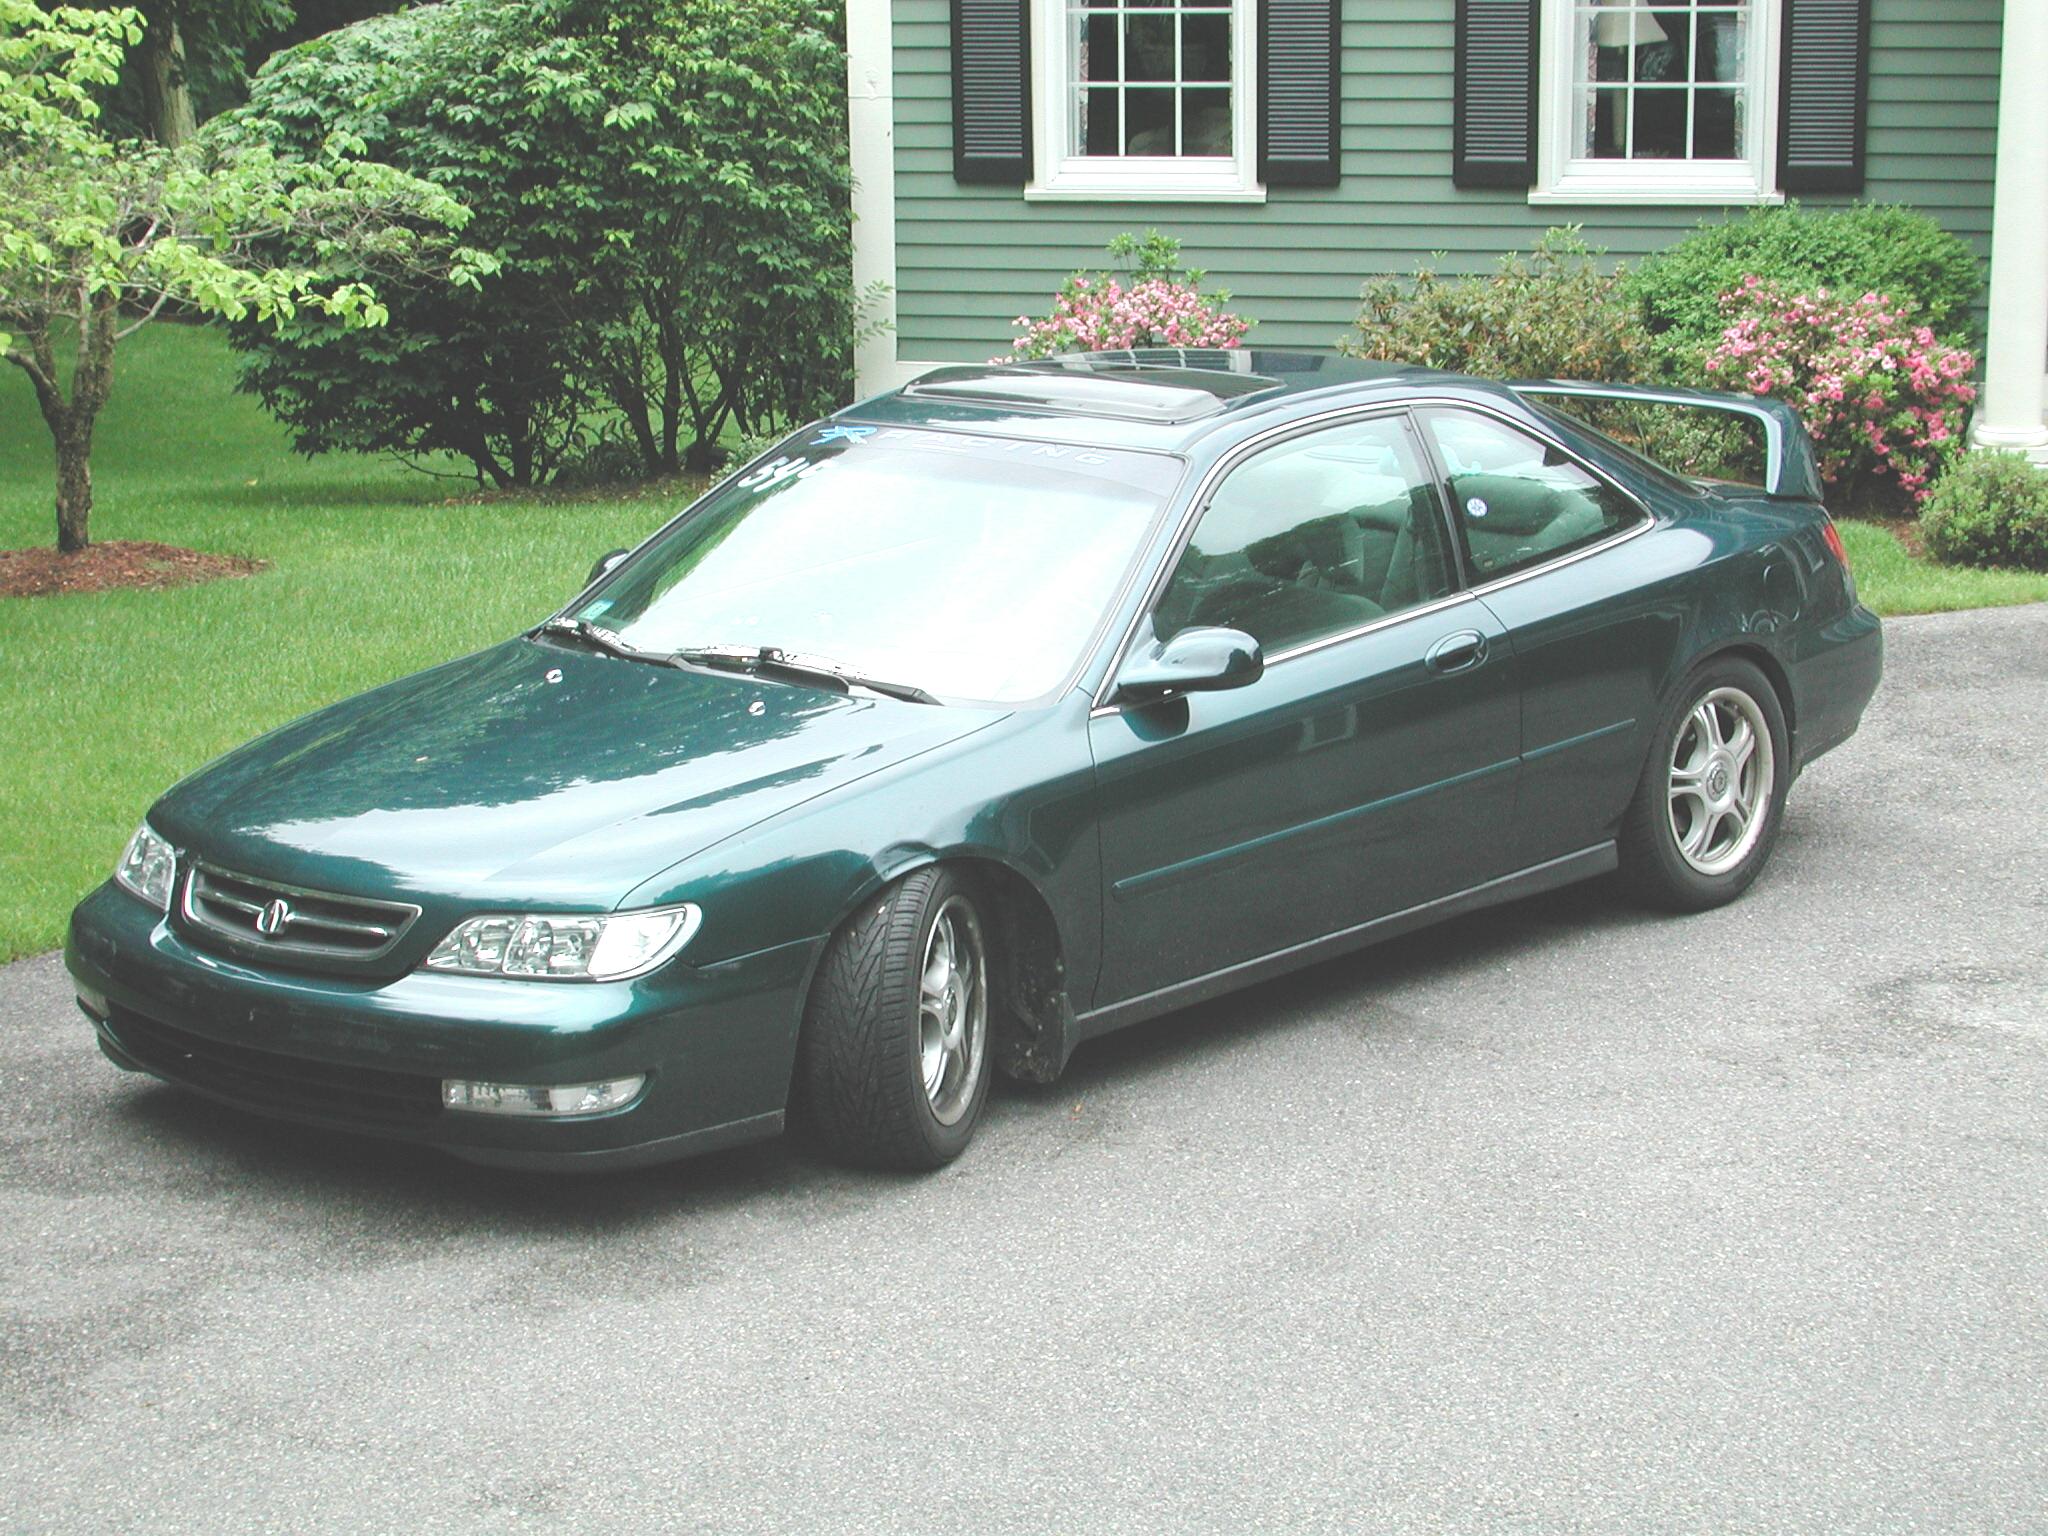  1997 Acura CL 3.0